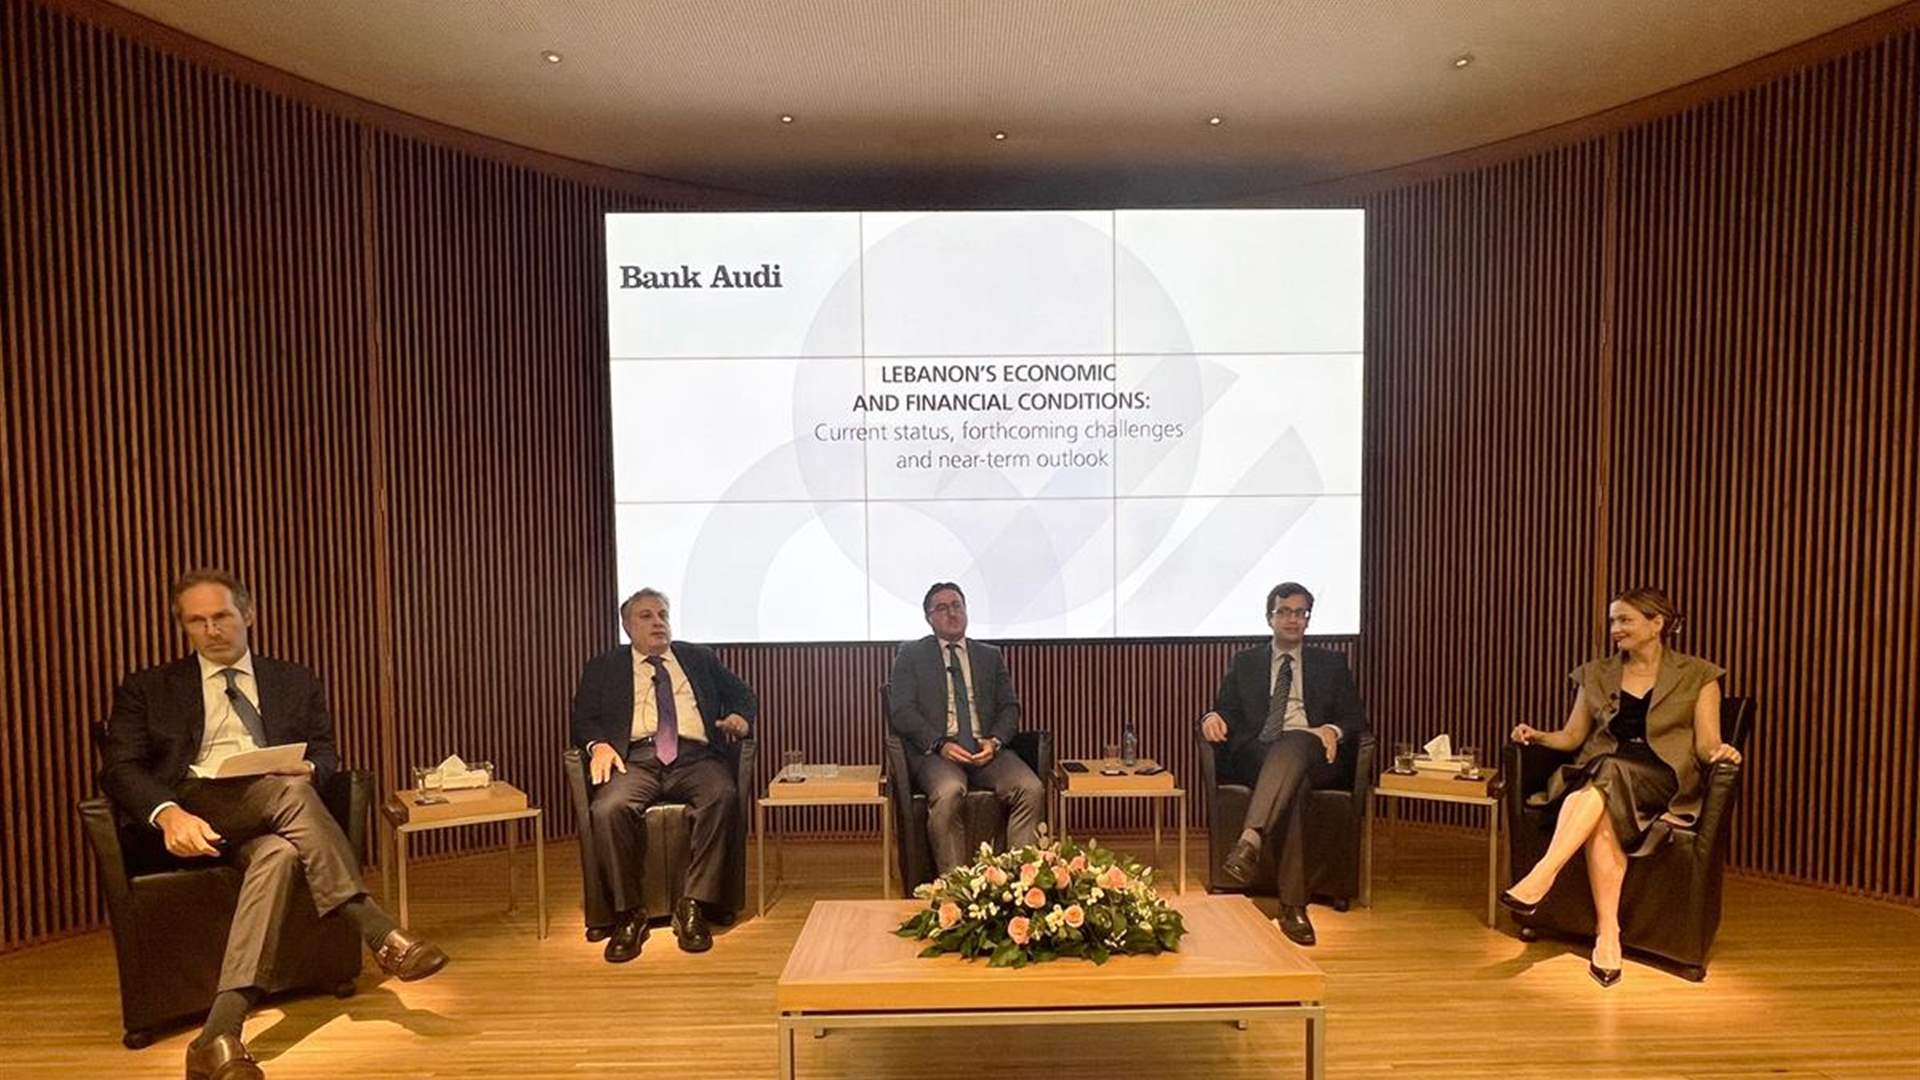 منتدى محلي-دولي في بنك عوده حول اقتصاد لبنان: من التحديات إلى المخارج والآفاق (صورة)